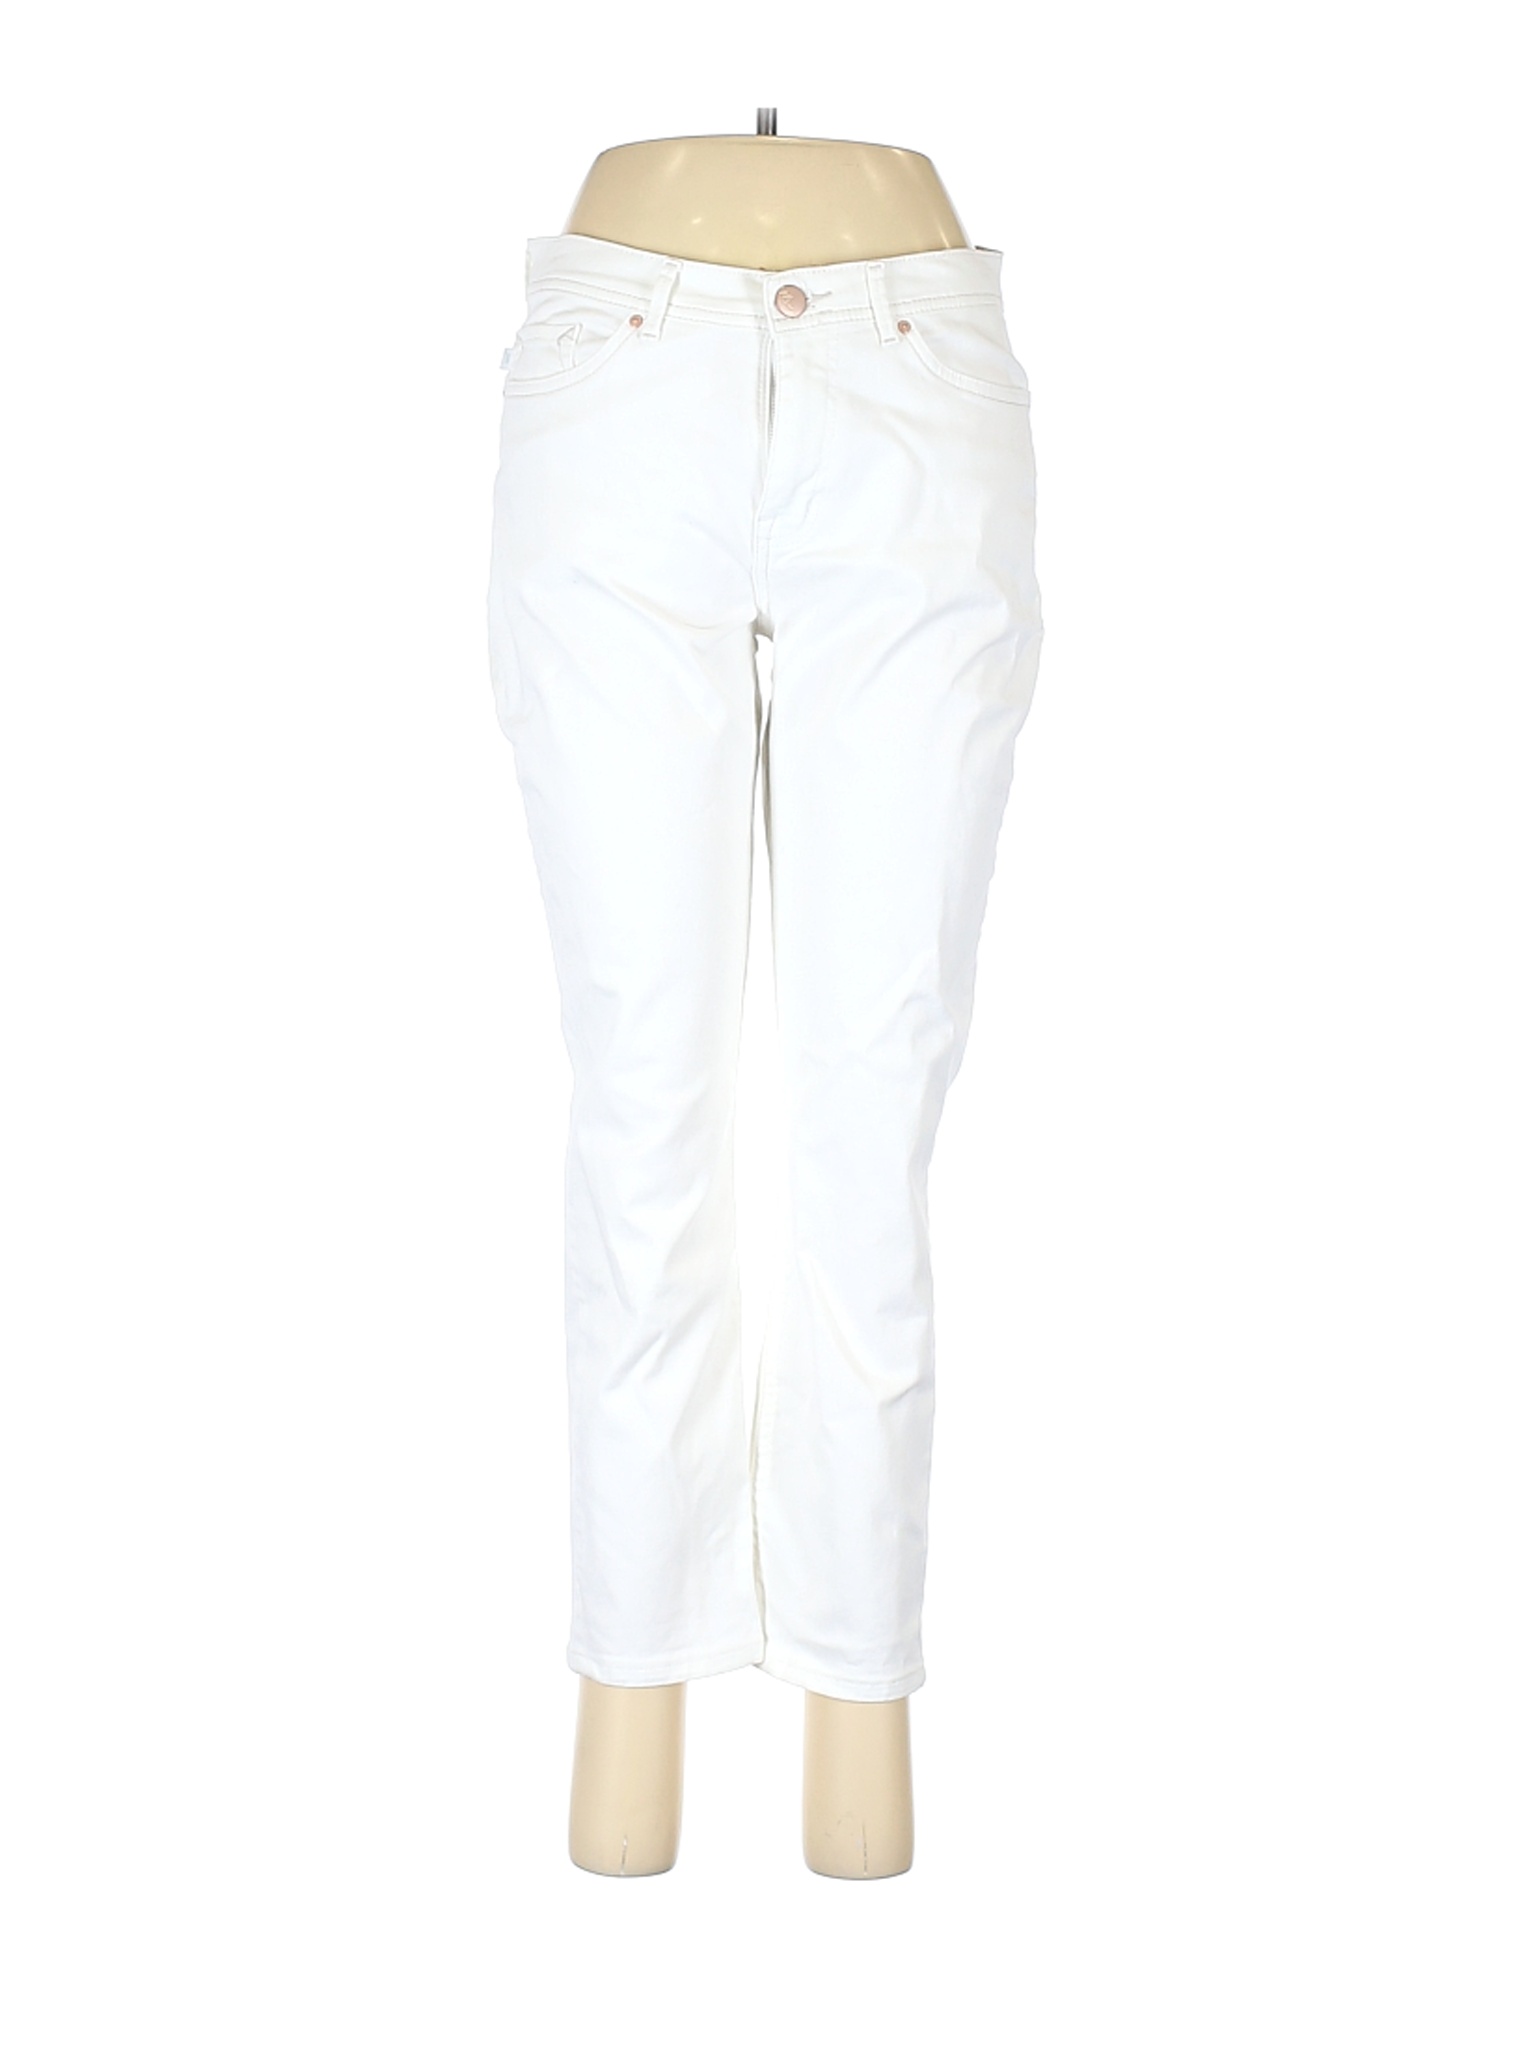 Lee Women White Jeans 6 | eBay